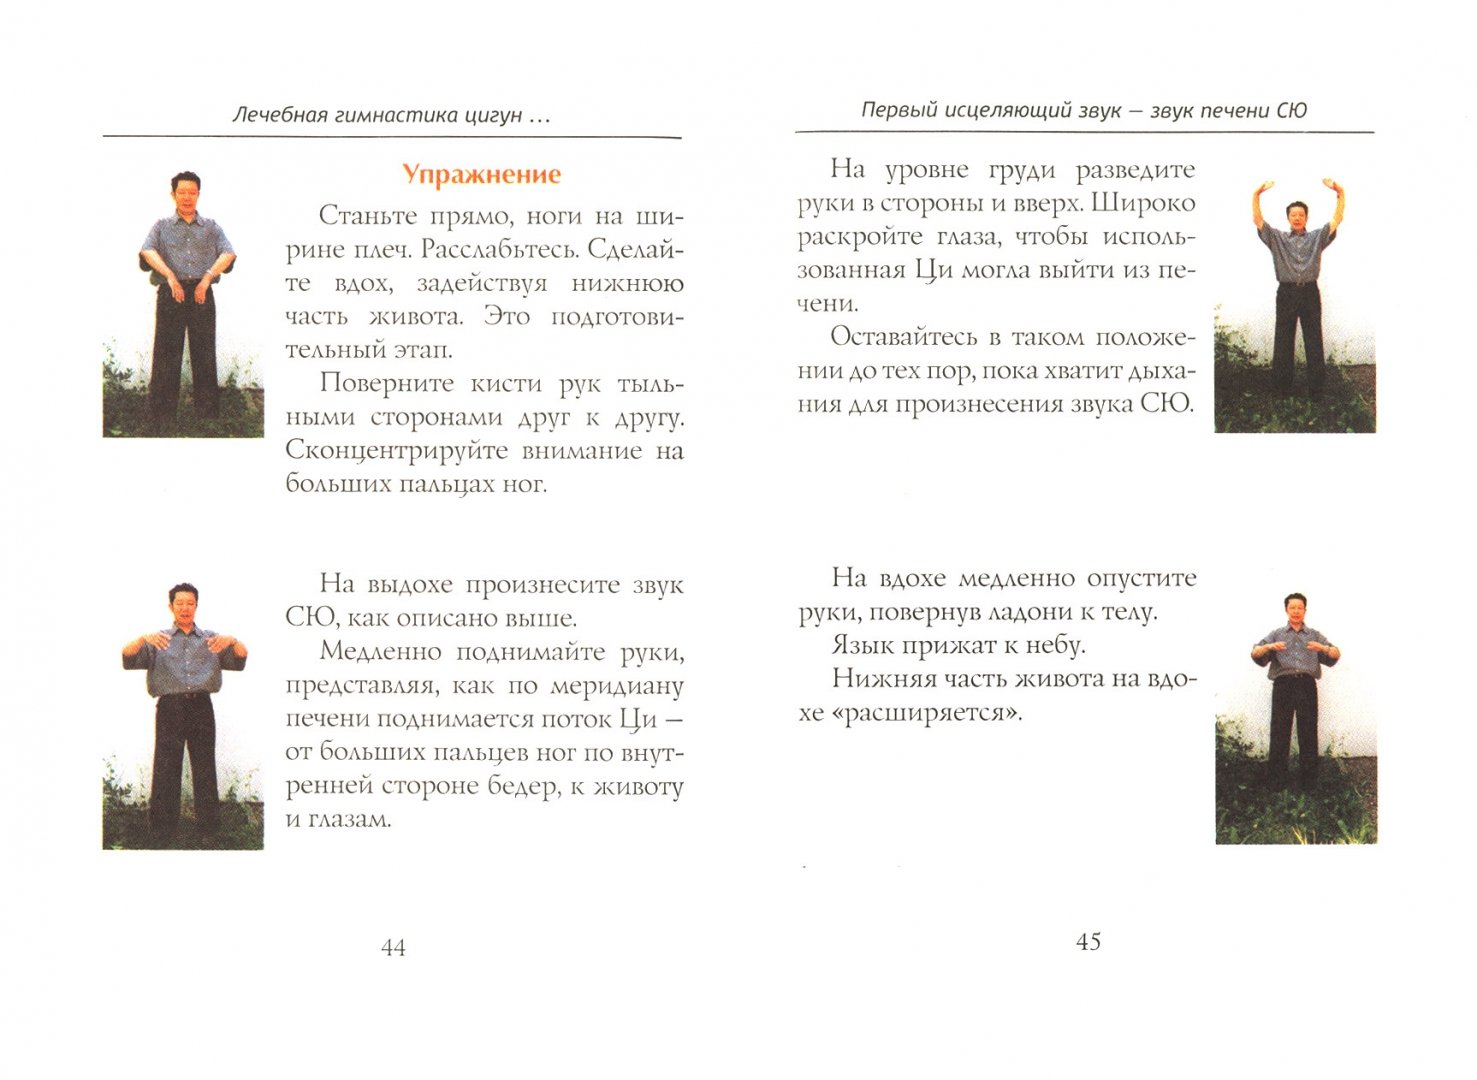 Практика цигун для начинающих женщин упражнения. Дыхательная гимнастика цигун для начинающих 8 упражнений. Дыхательные упражнения цигун для начинающих 8 упражнений. Инка Йохум лечебная гимнастика цигун. Гимнастика цигун комплекс упражнений книга.